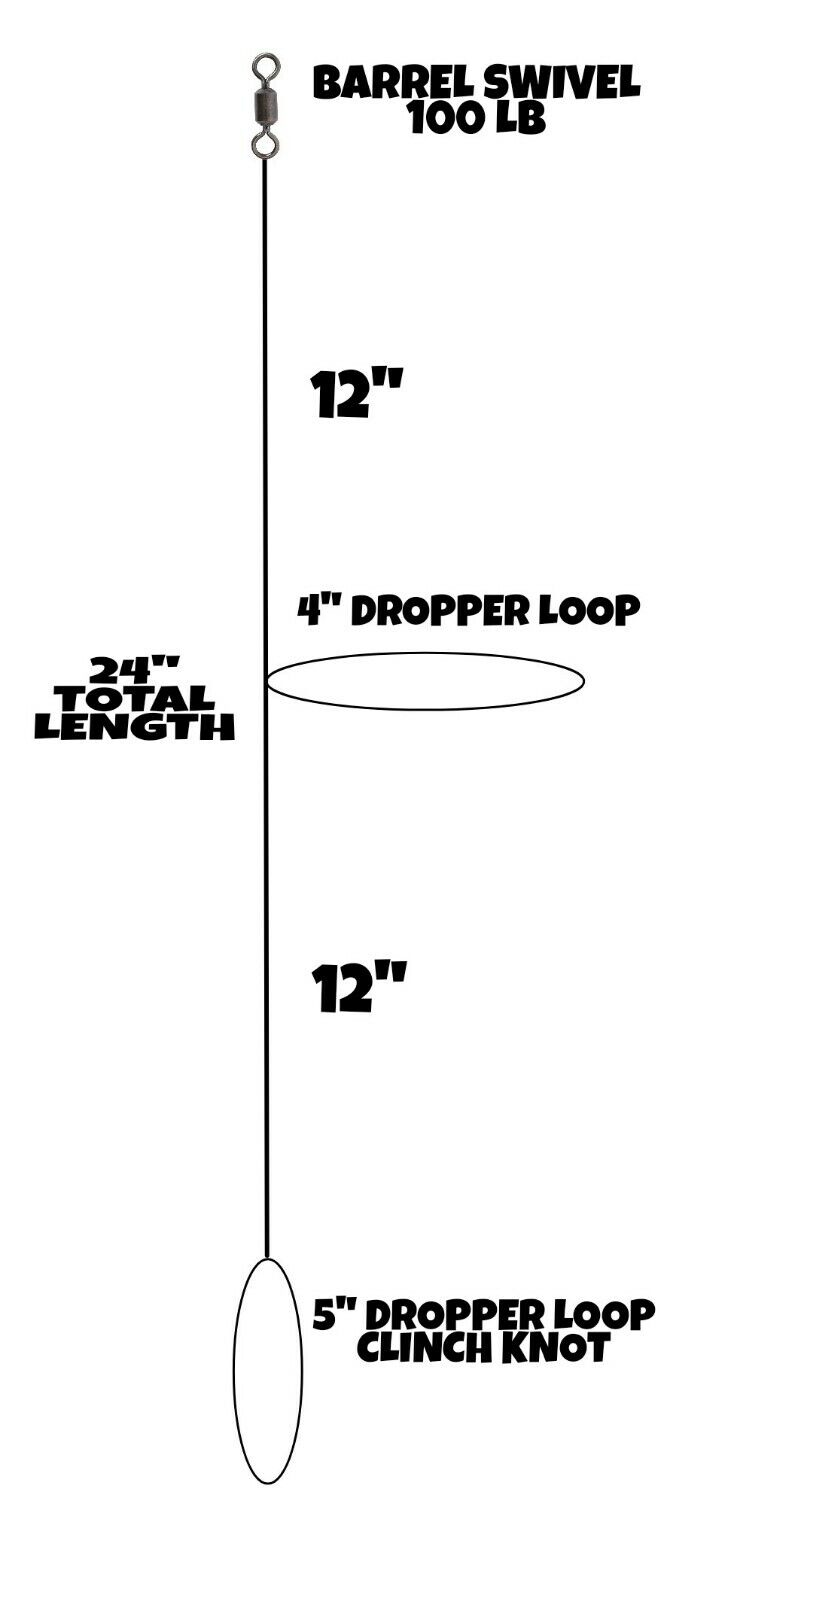 Fishing Hi - Lo Bottom Rig Single Dropper Loop 30 Lb Mono Line Fluke Sea Bass